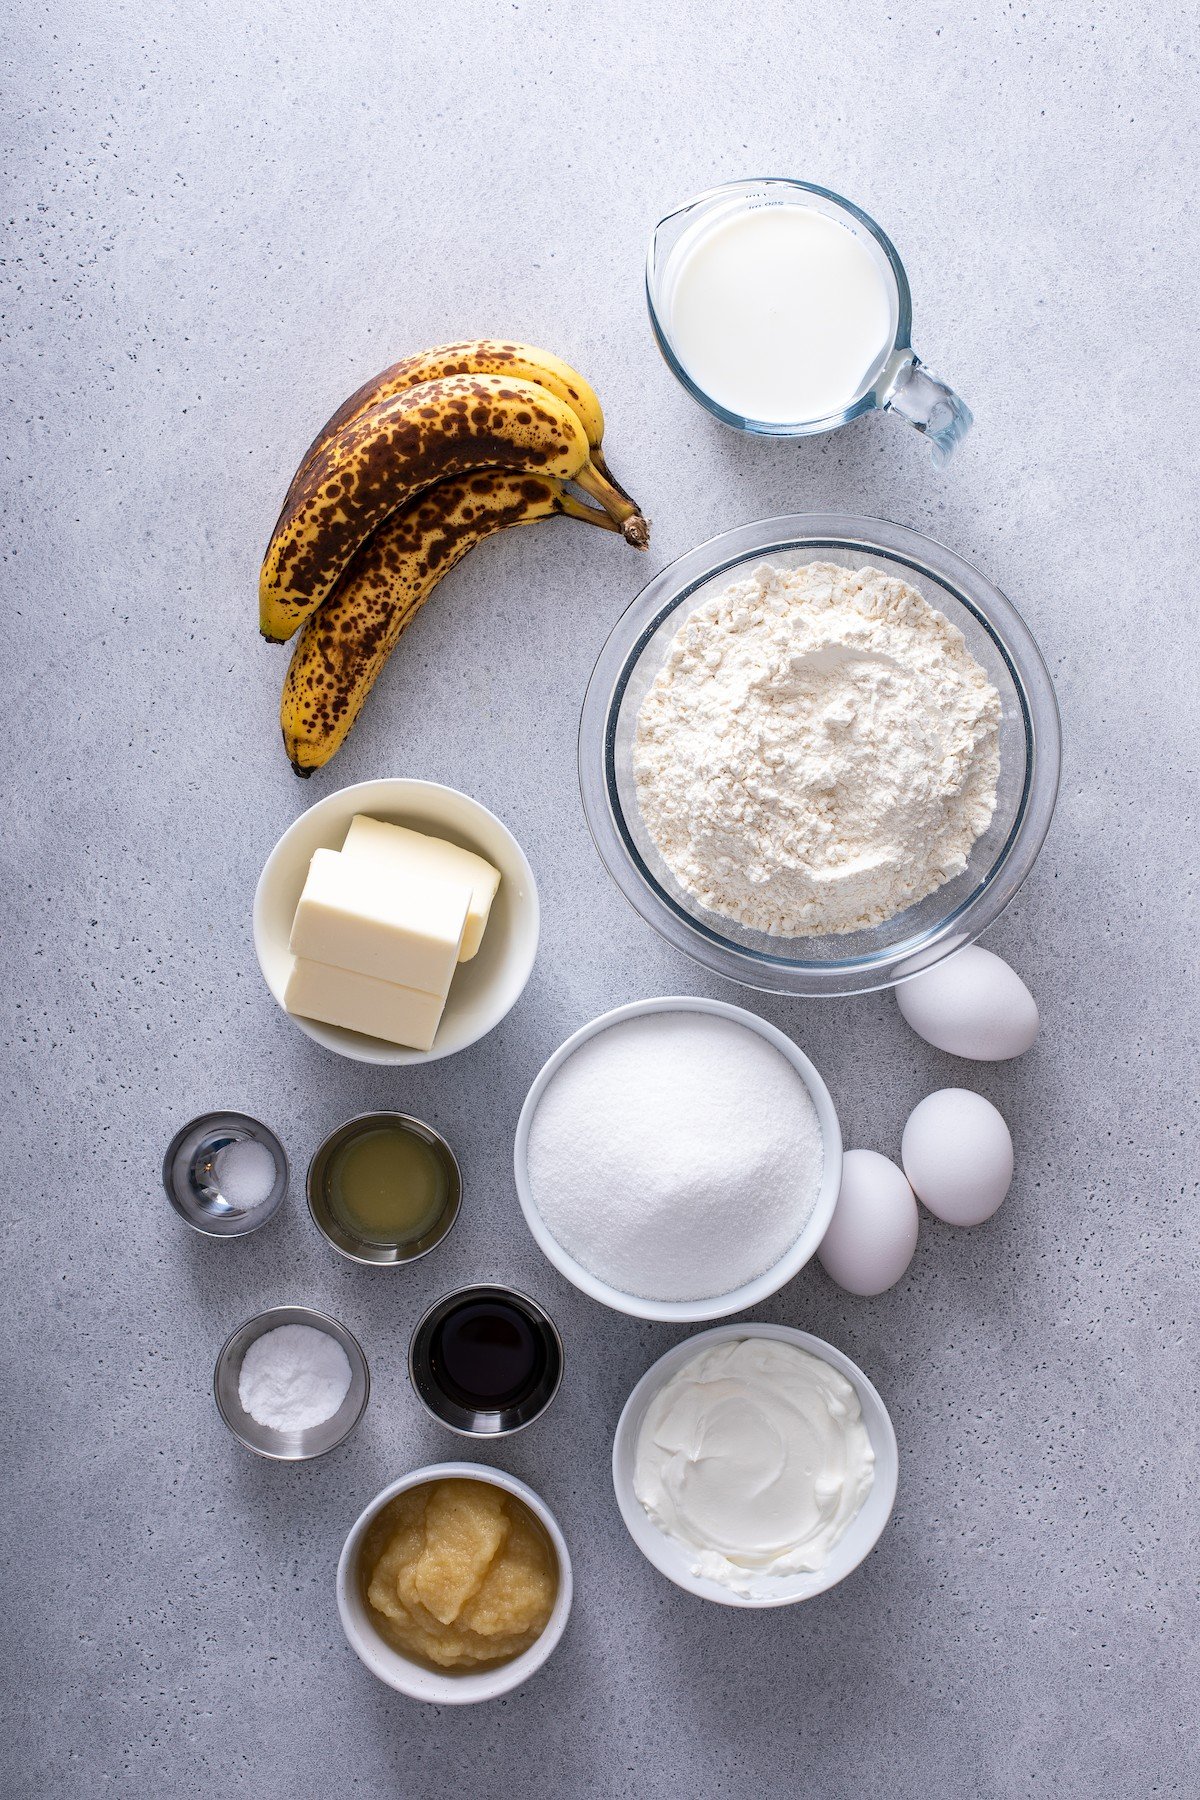 Banana cake ingredients